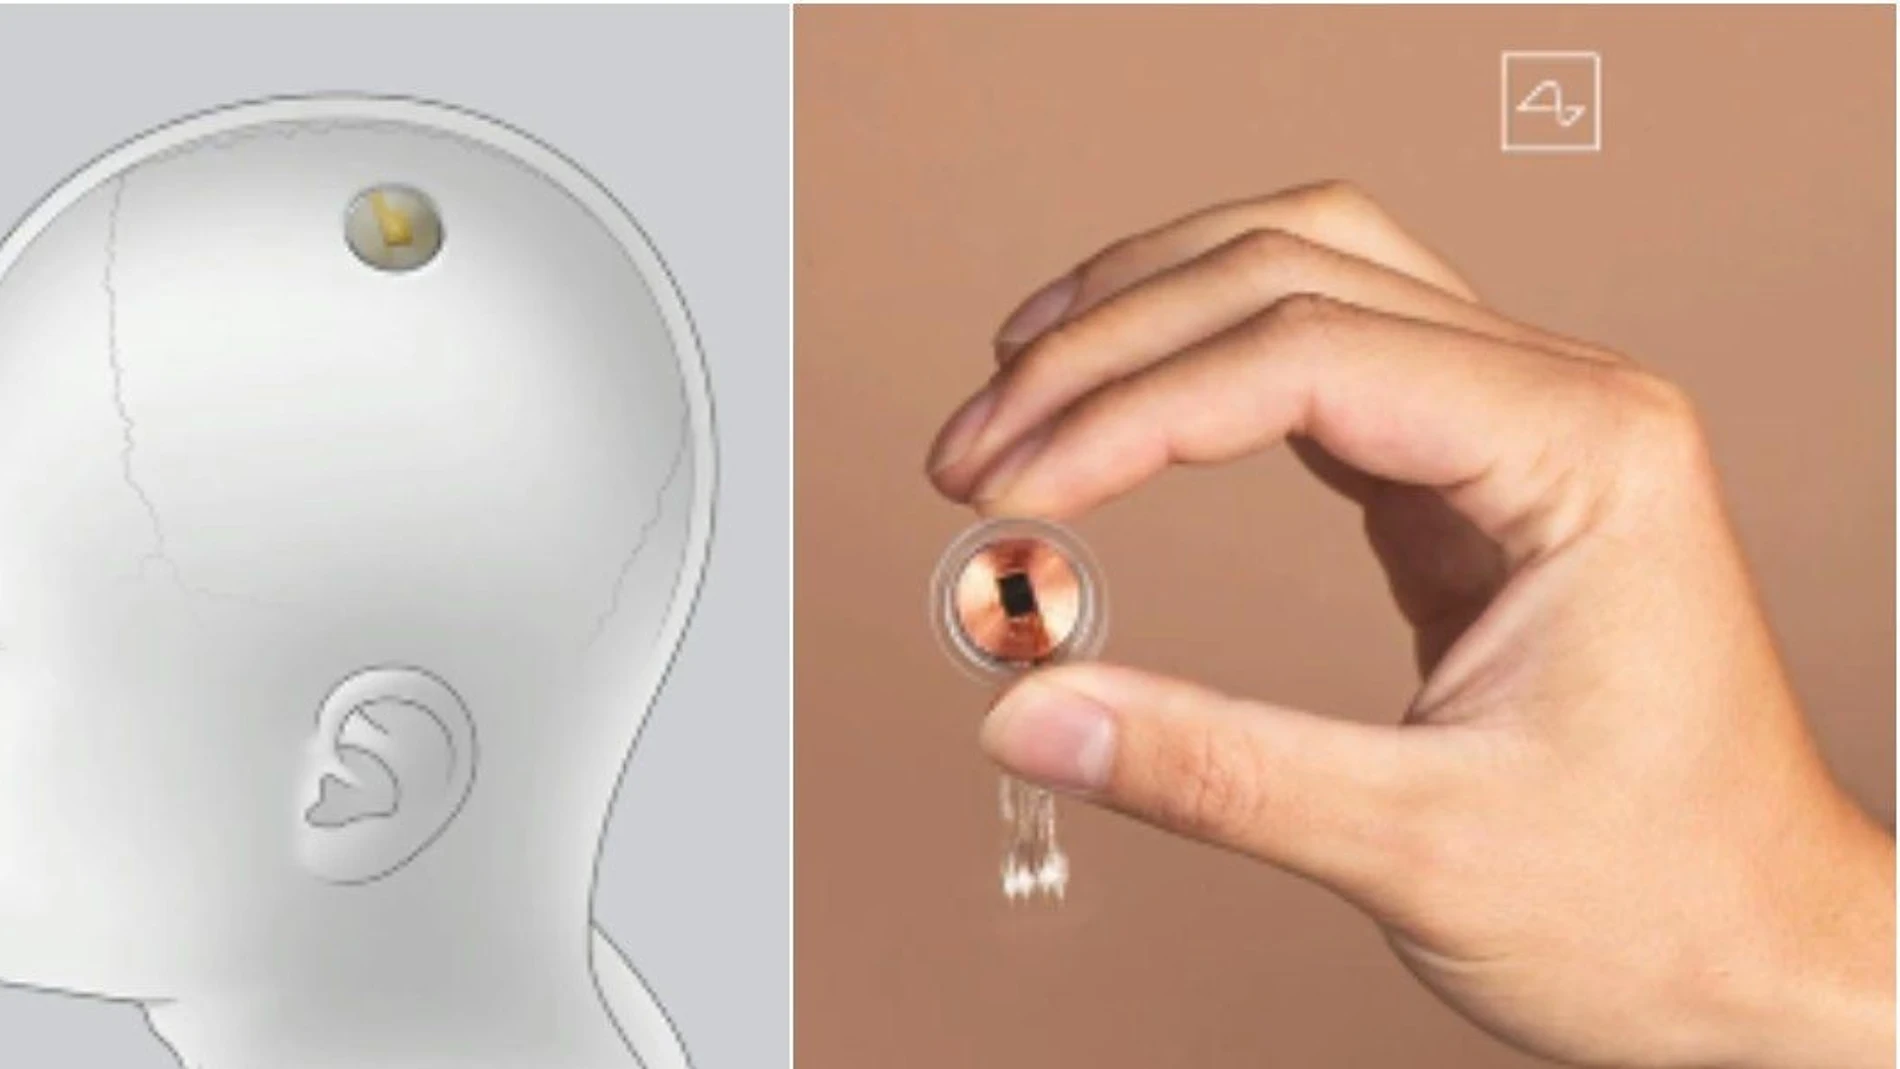 A la izquierda se muestra una ilustración de dónde se implantaría el dispositivo. A la derecha se muestra el dispositivo en sí con una fotografía real.